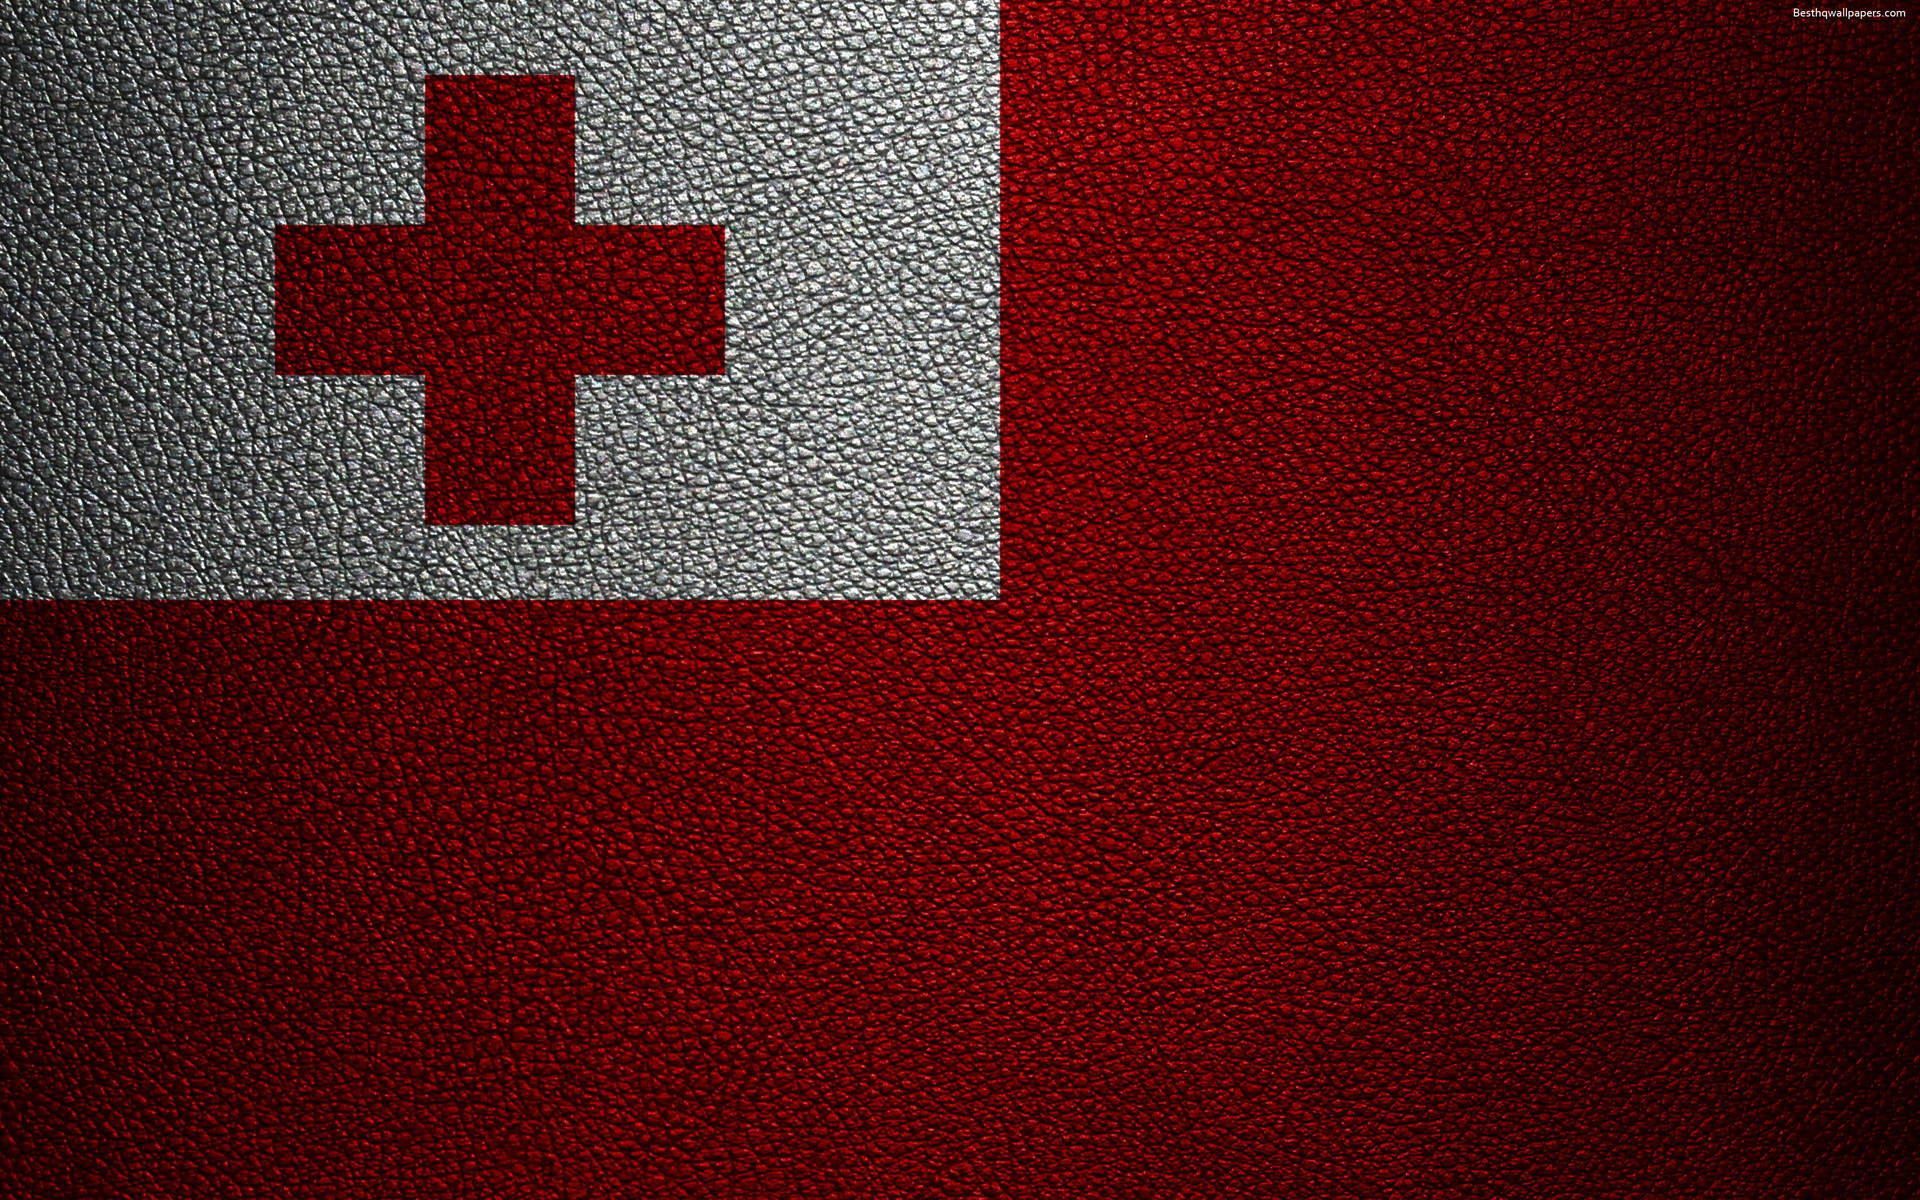 Banderade Tonga Con Una Apariencia Granulada. Fondo de pantalla